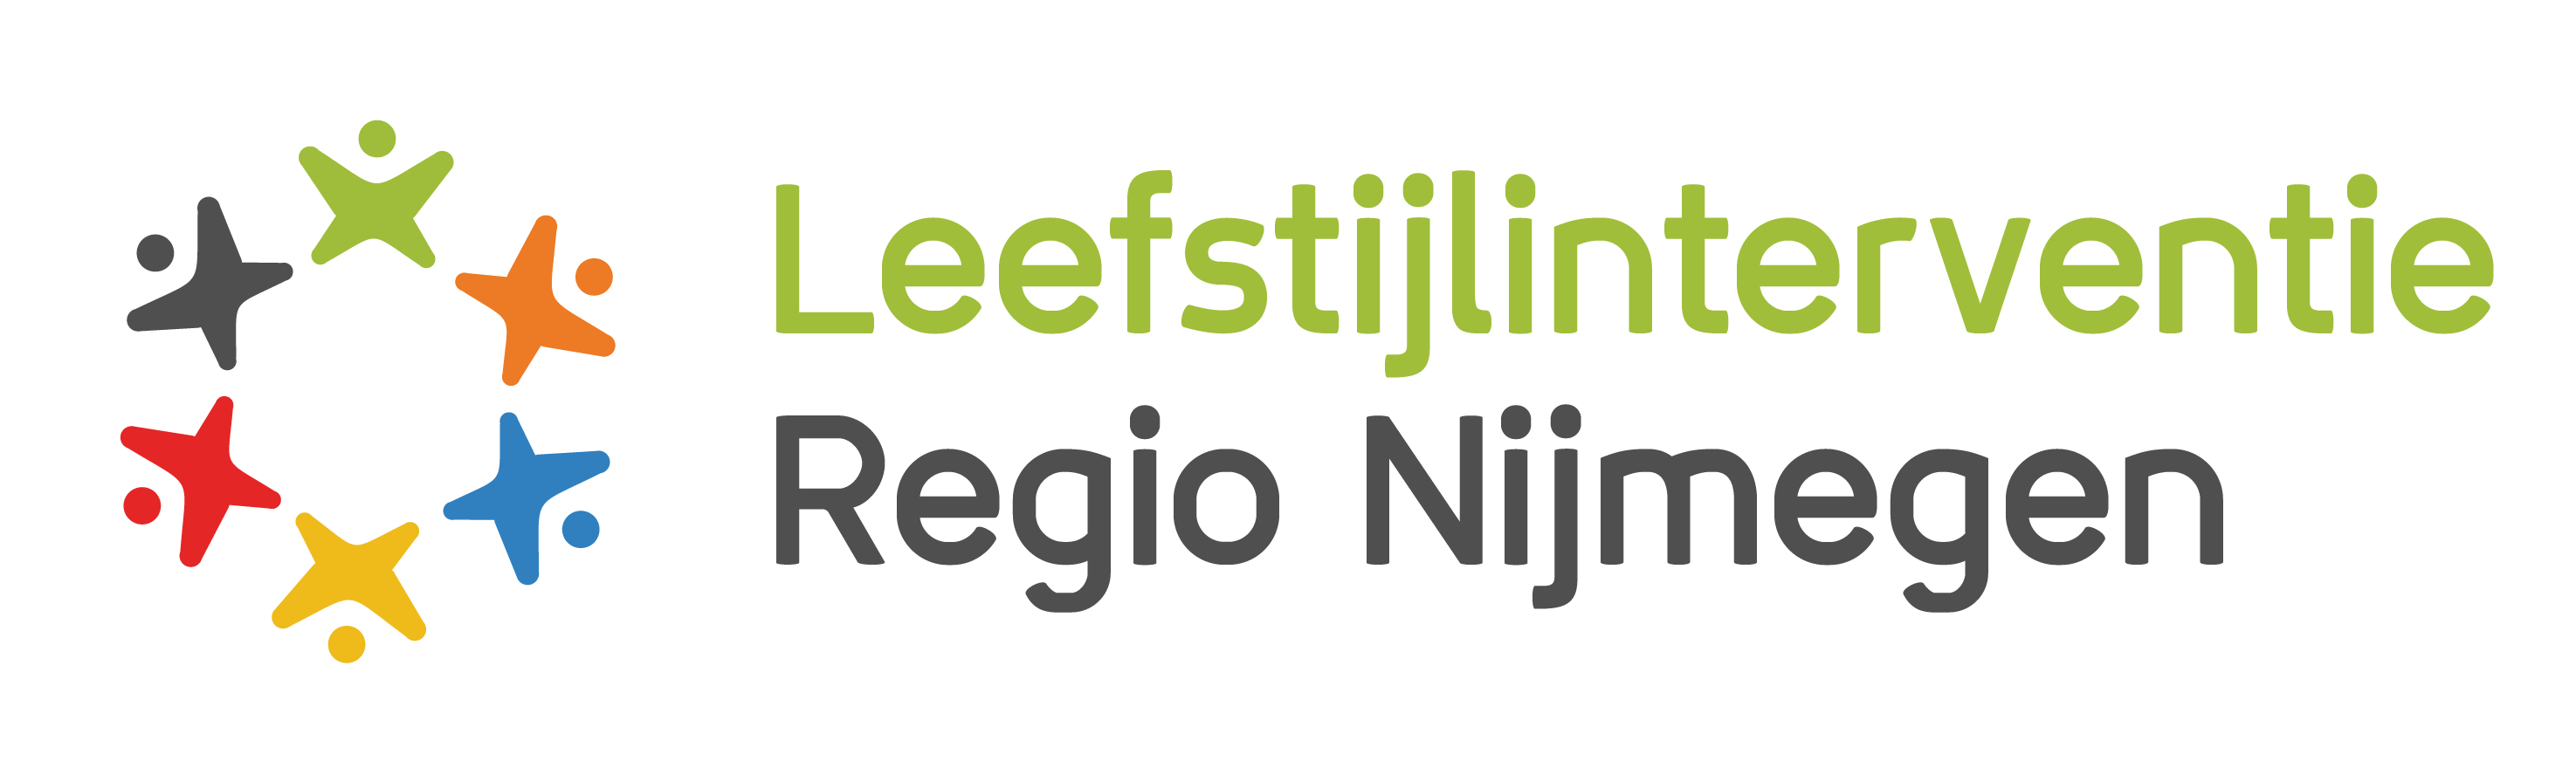 Leefstijl interventie regio Nijmegen